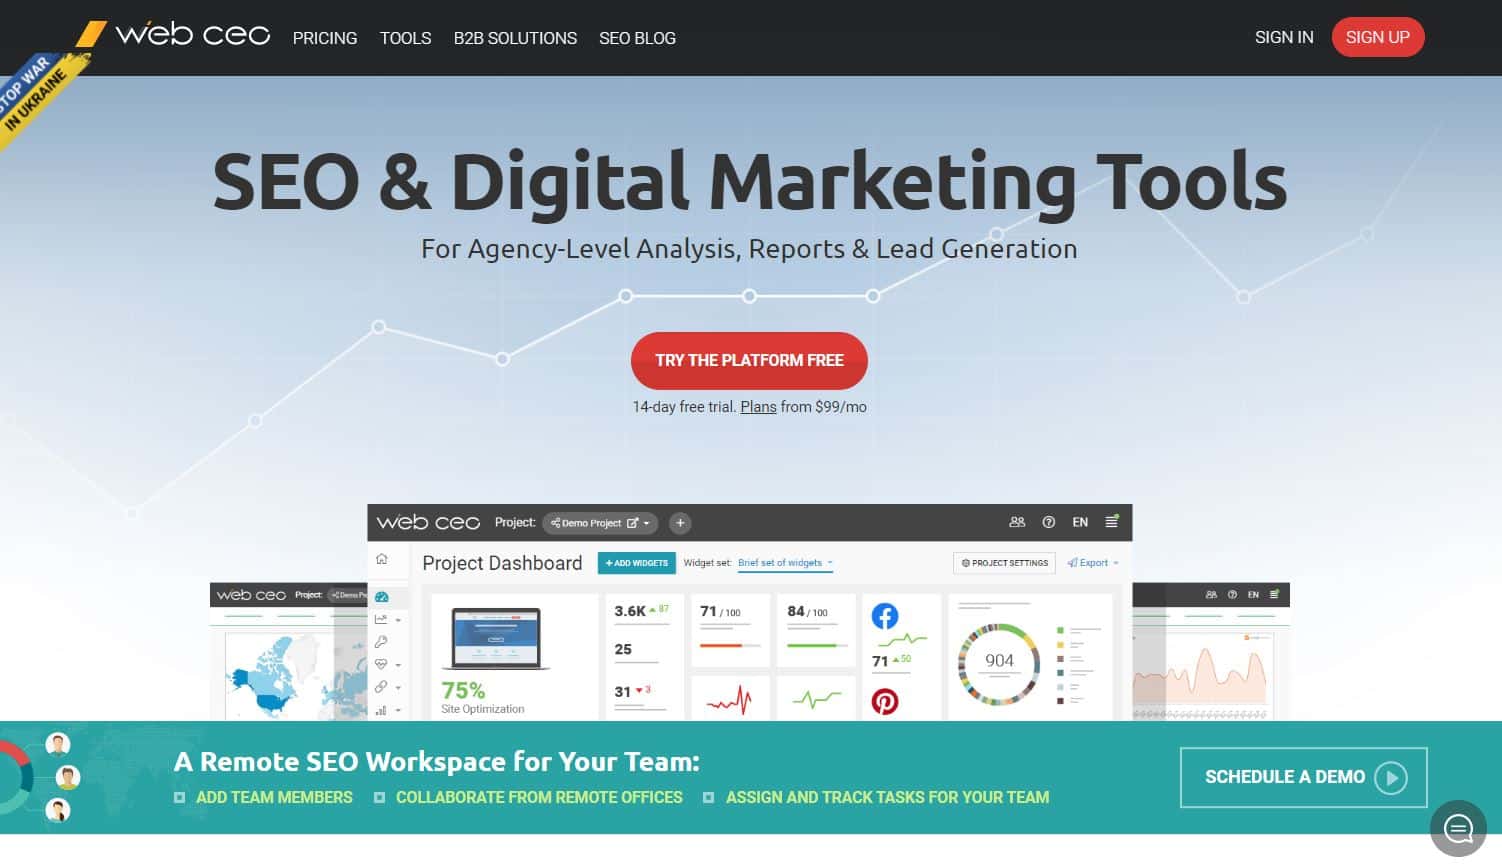 Die WebCEO-Startseite mit der Überschrift "SEO & Digital Marketing Tools".